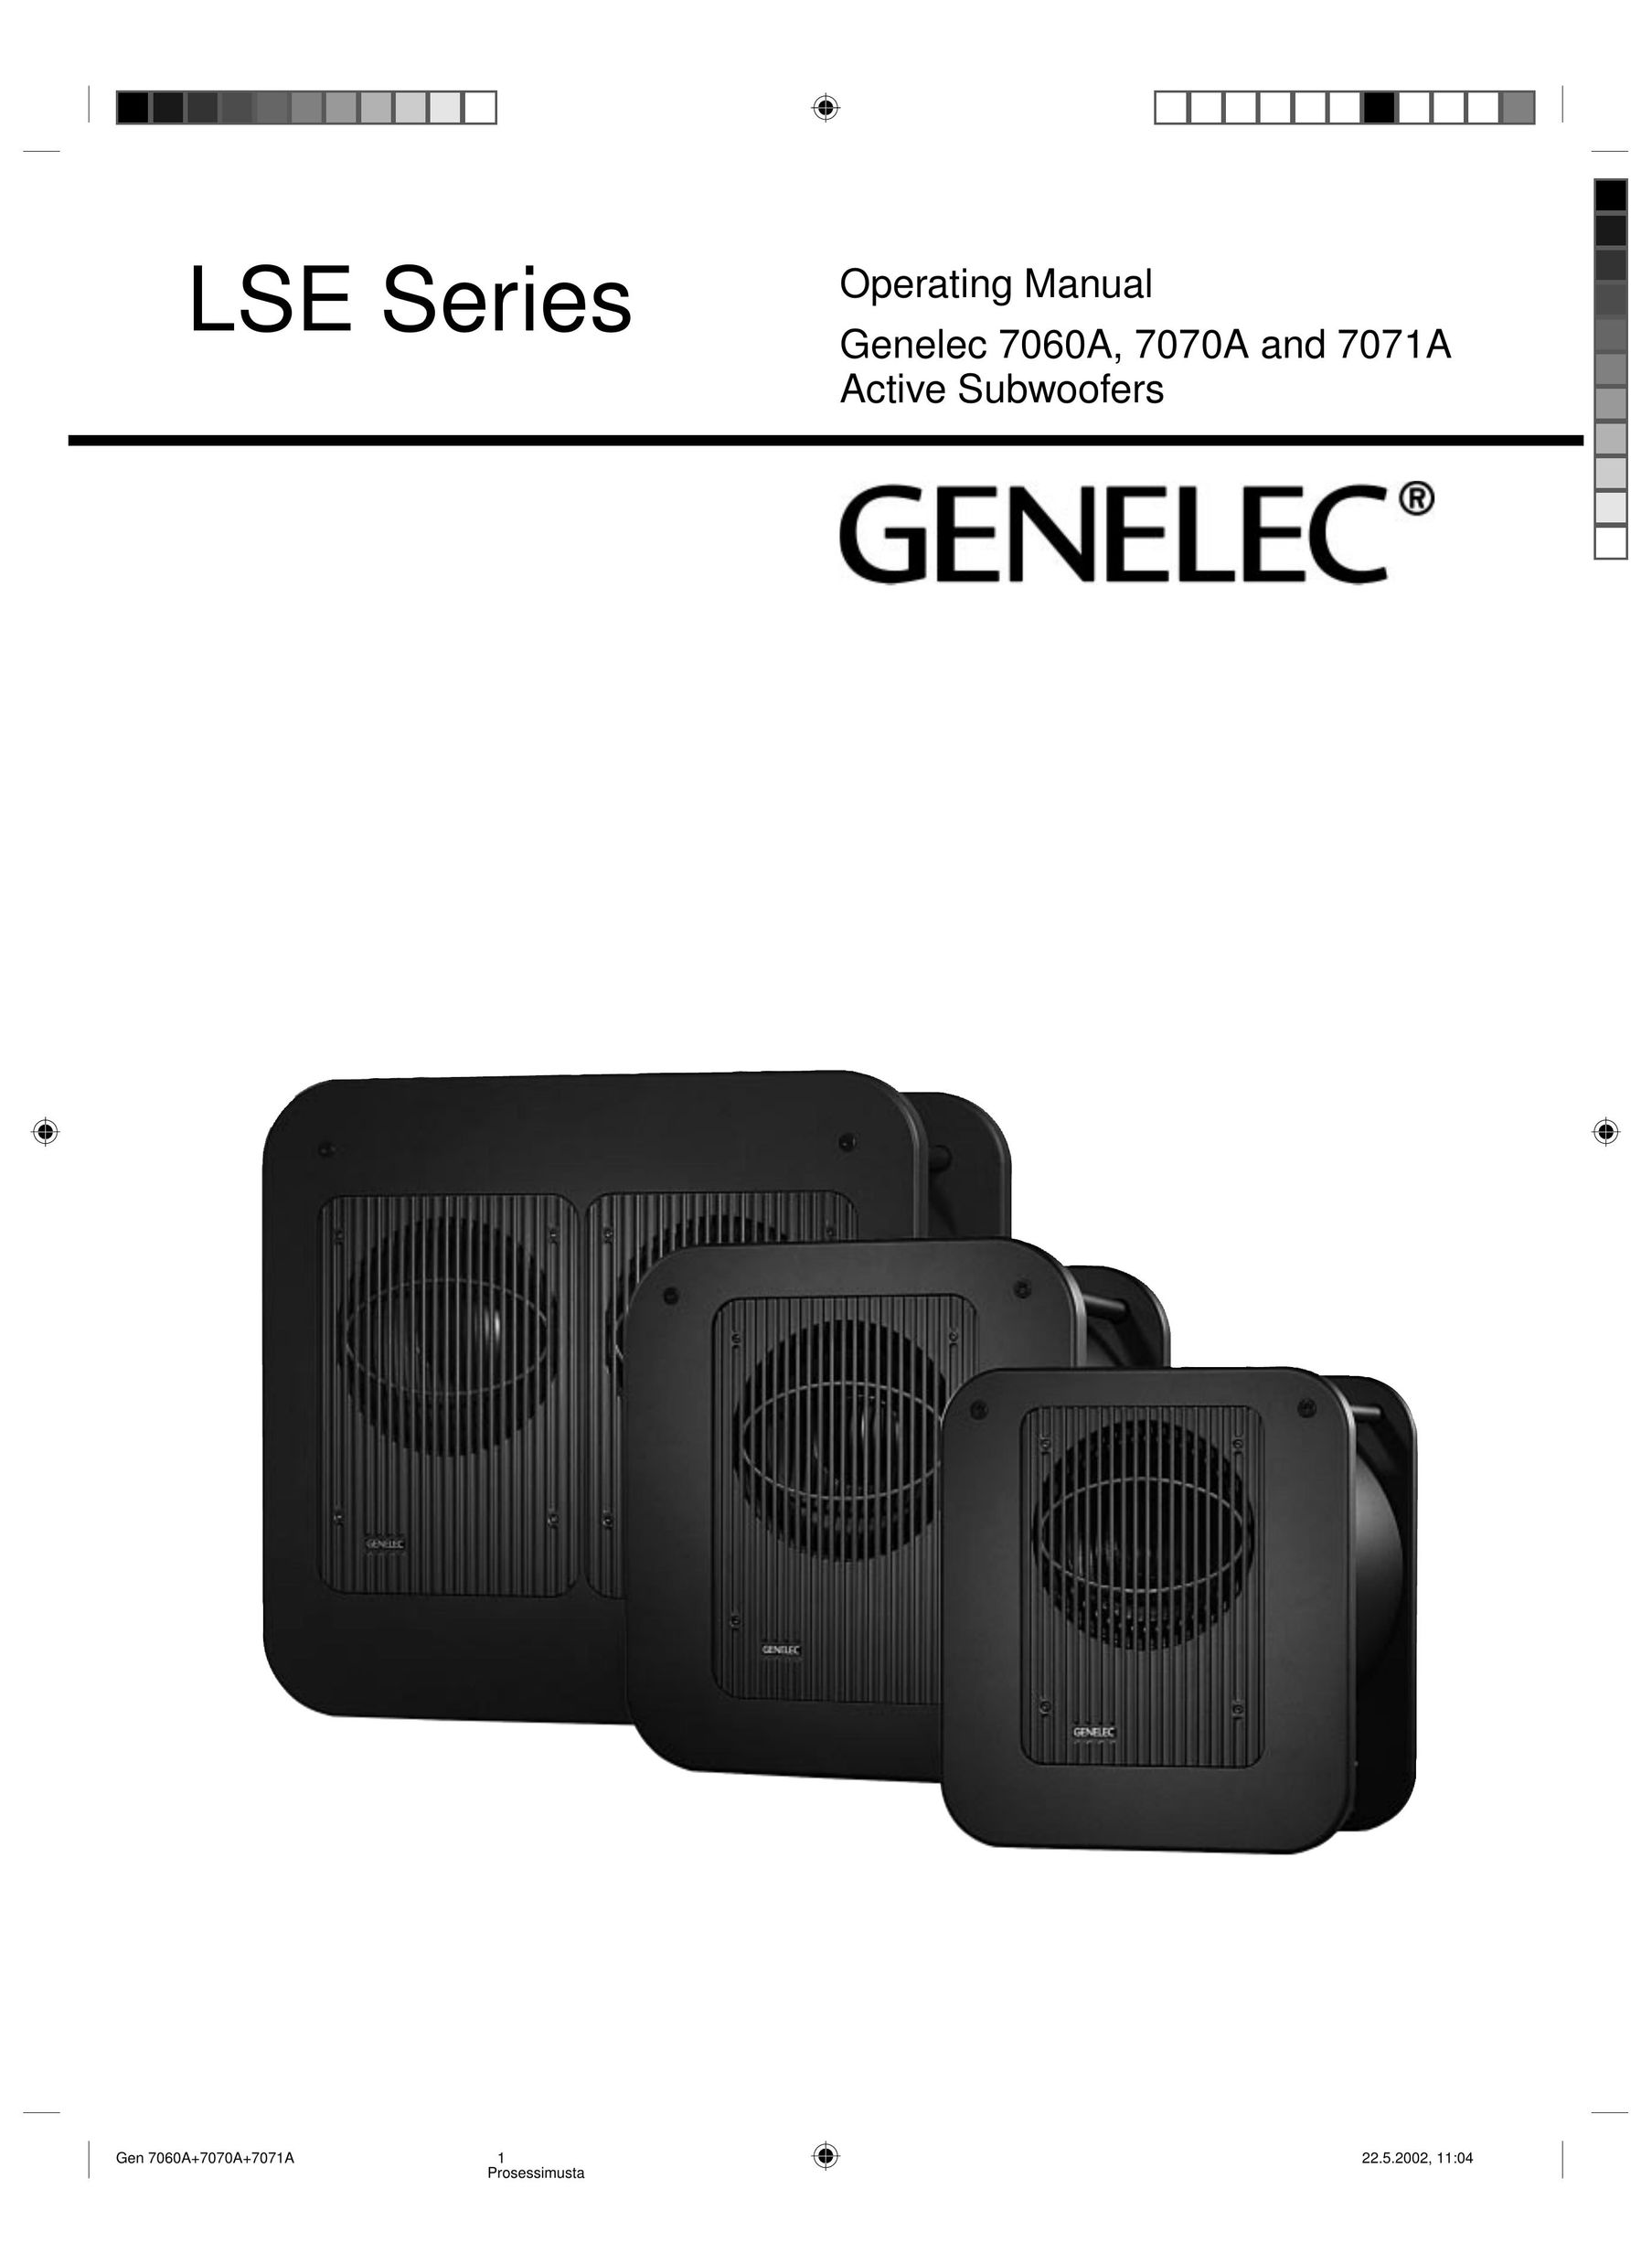 Genelec 7070A, 7071A Speaker User Manual